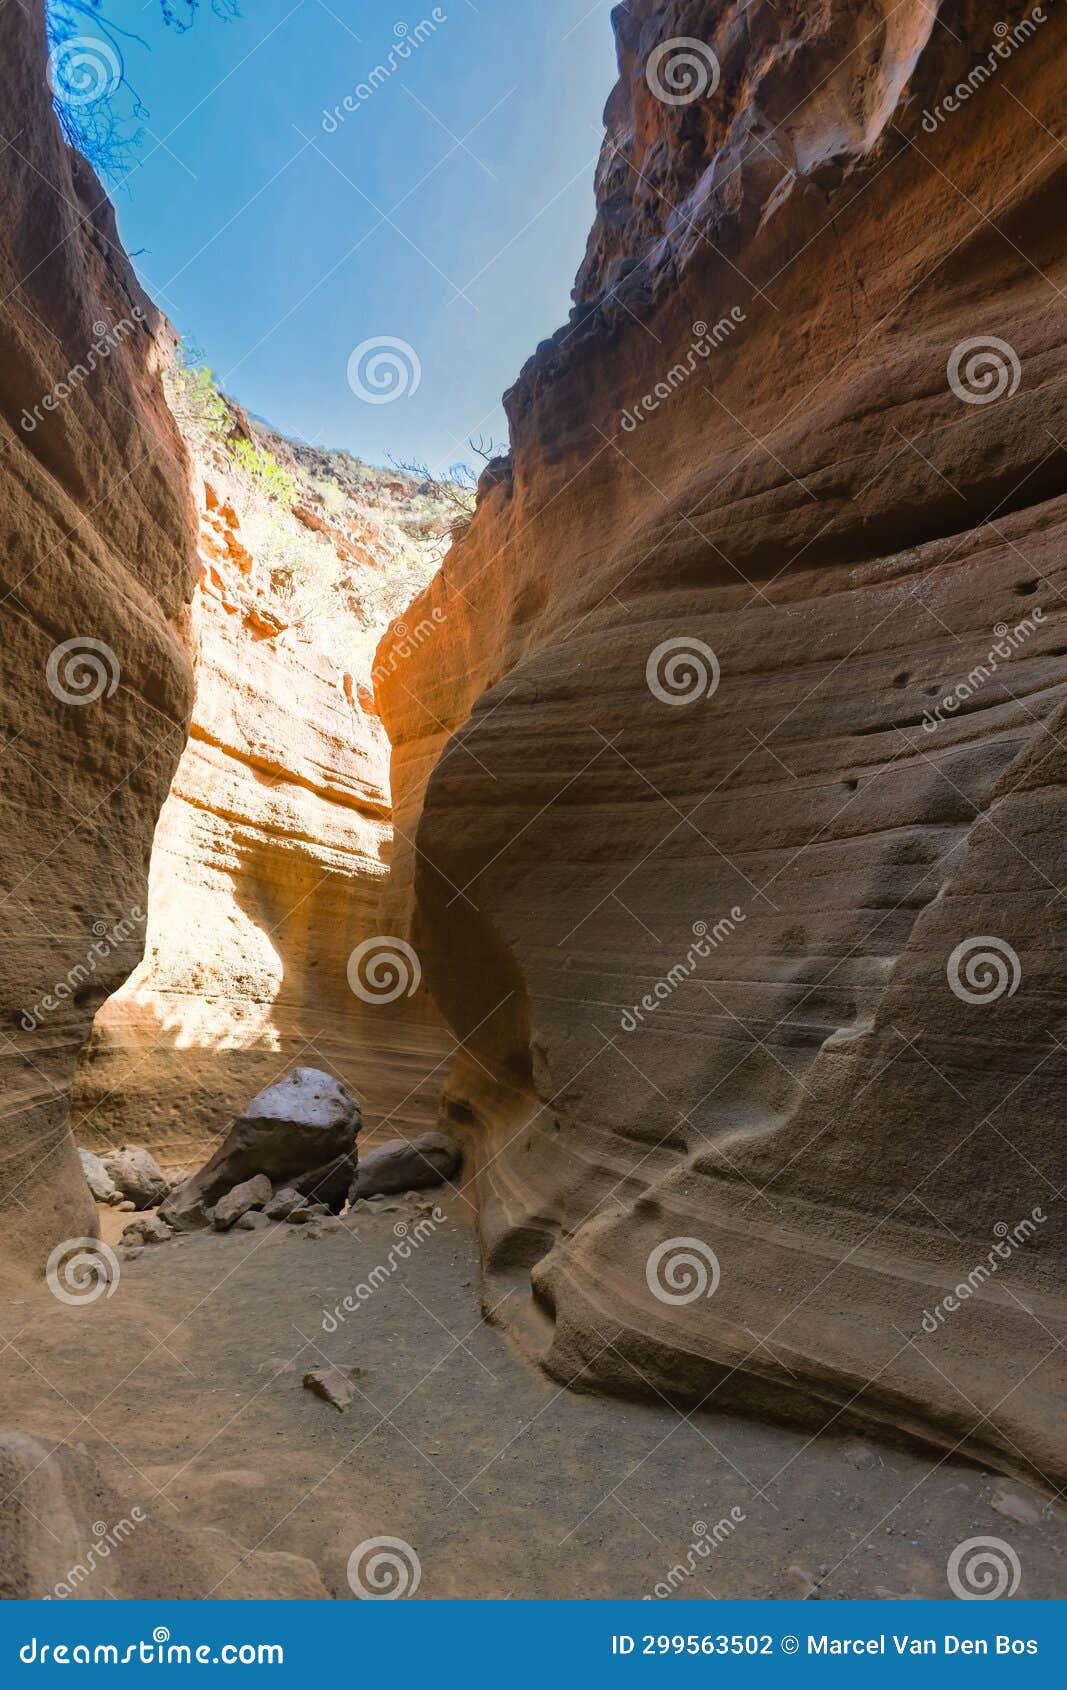 orange canyon, barranco de las vacas, gran canaria, canary islands, spain